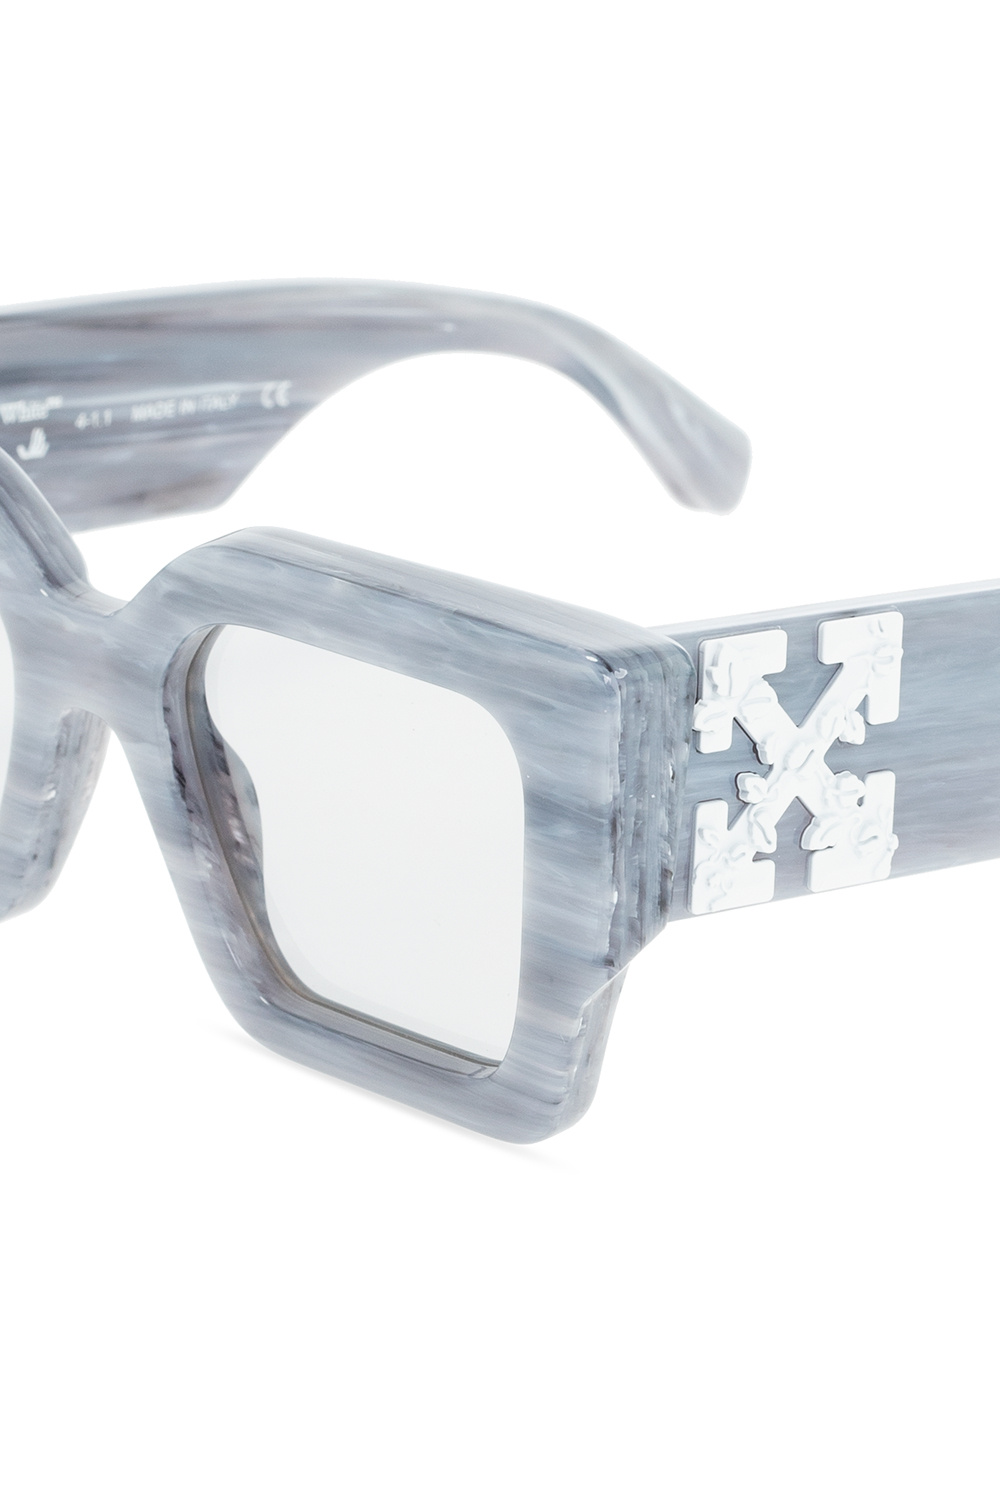 LV Escape Square Sunglasses - Accessories, LOUIS VUITTON